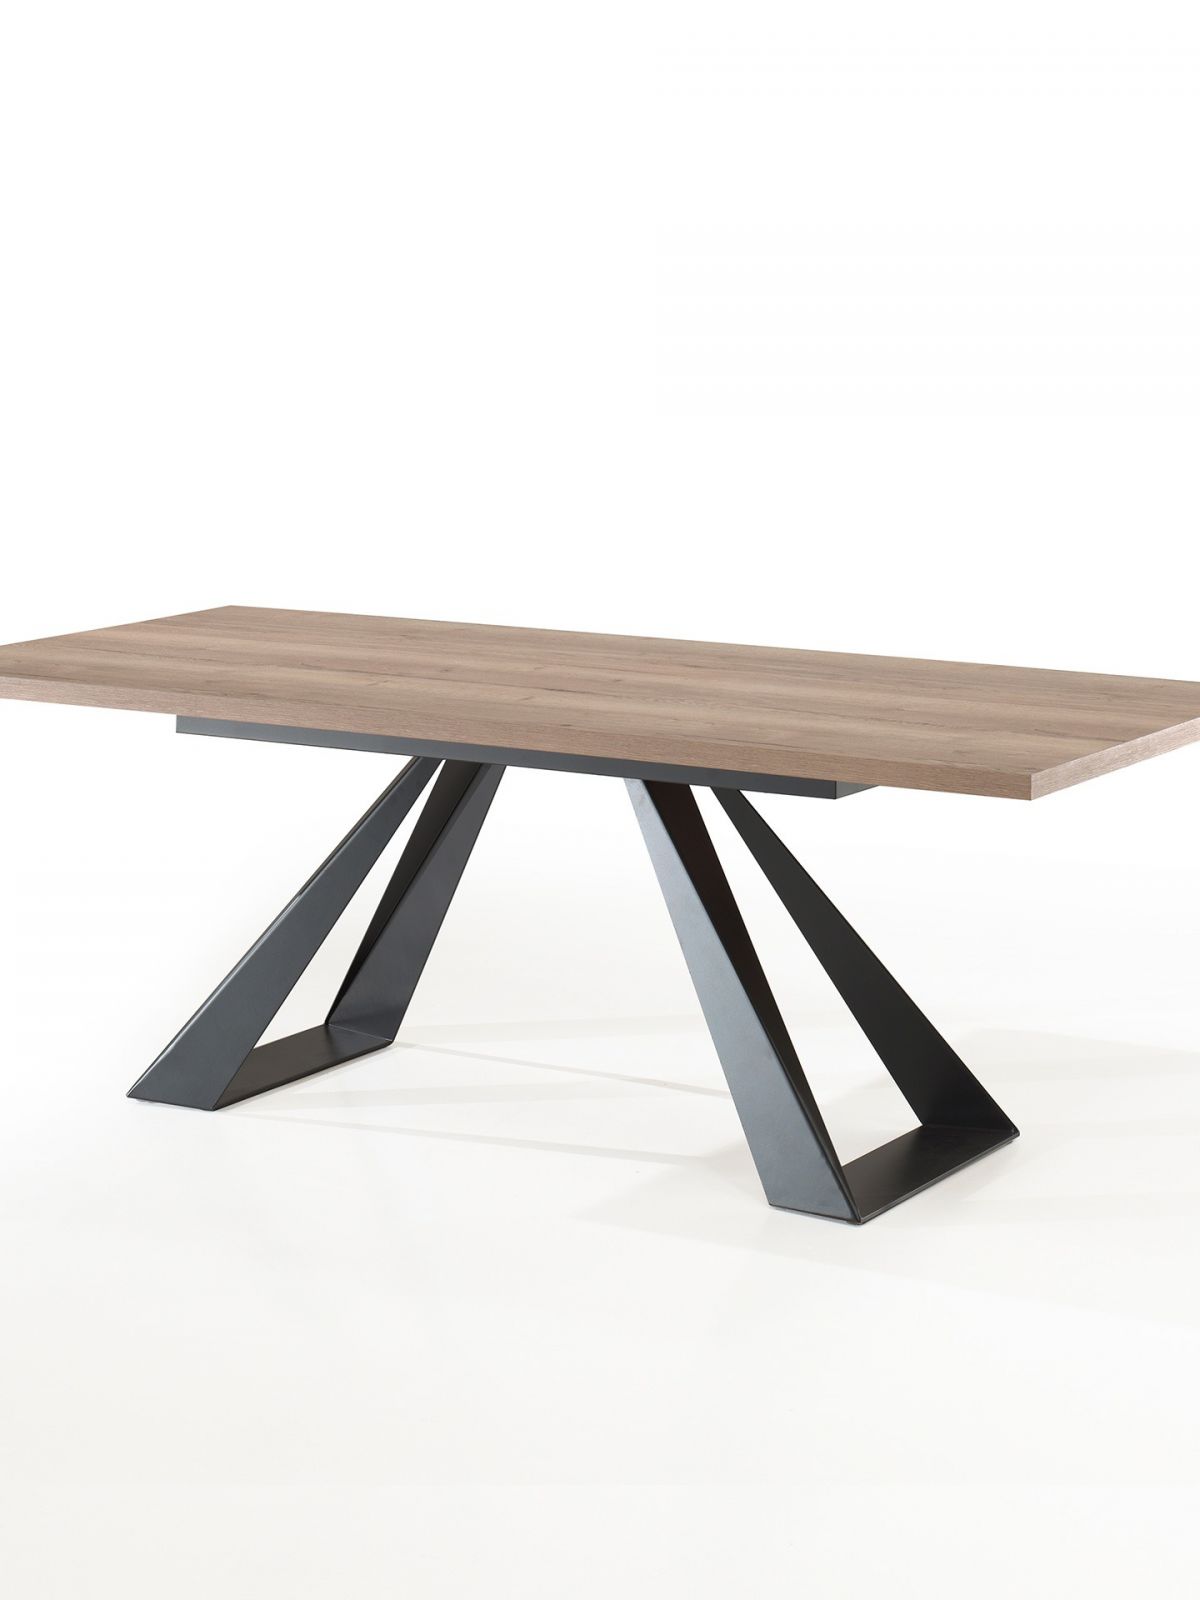 Table rectangulaire fixe pied métal - 2.40m